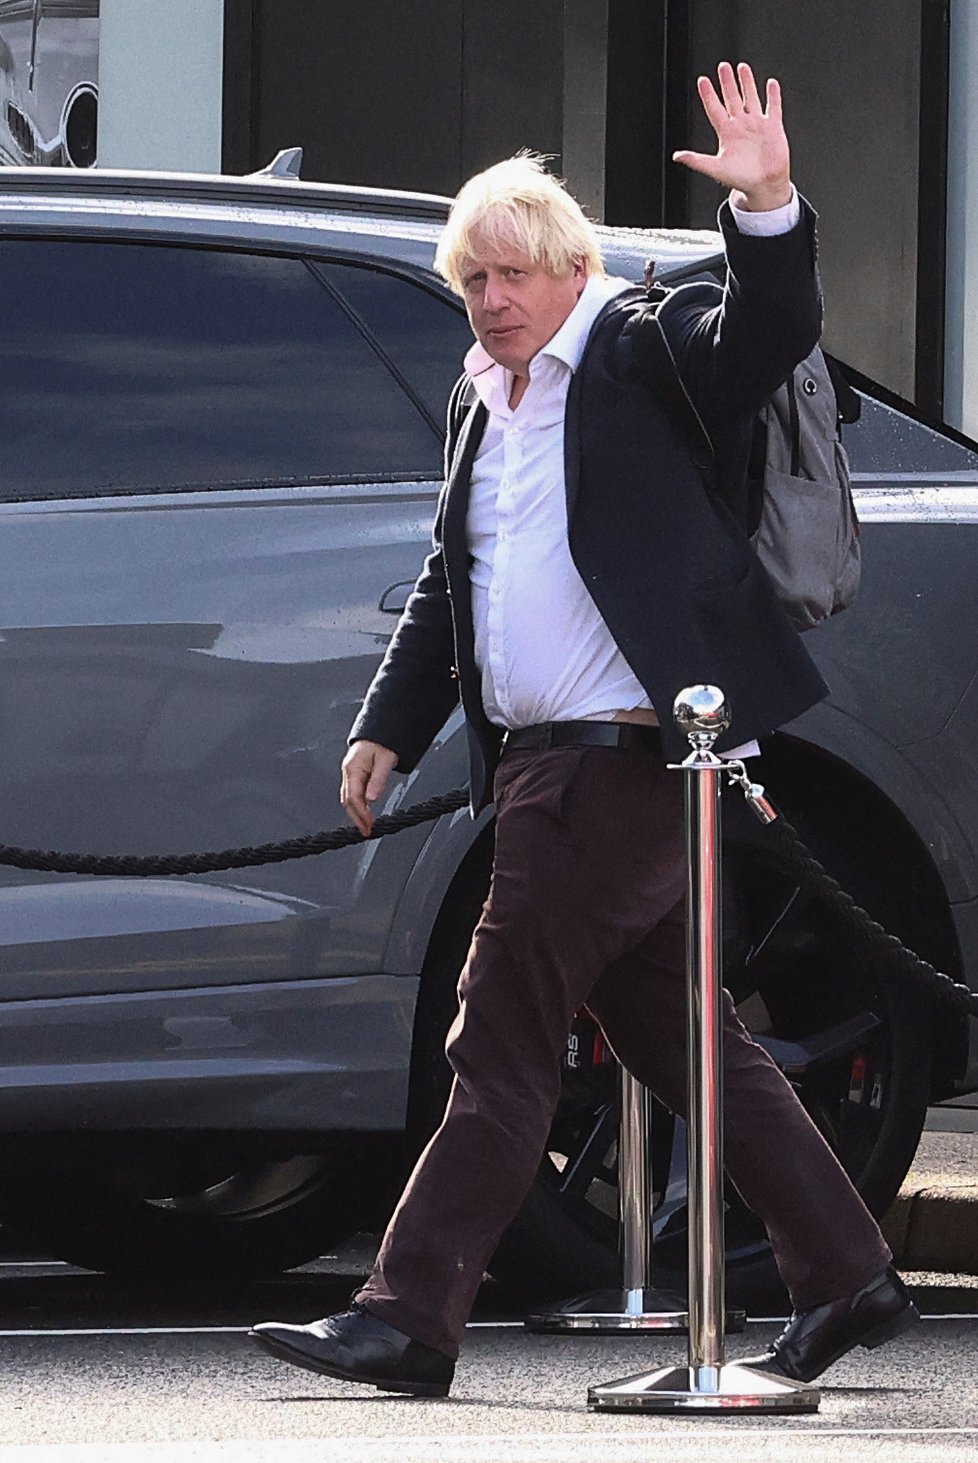 Přílet Borise Johnsona z dovolené (22.10.2022)